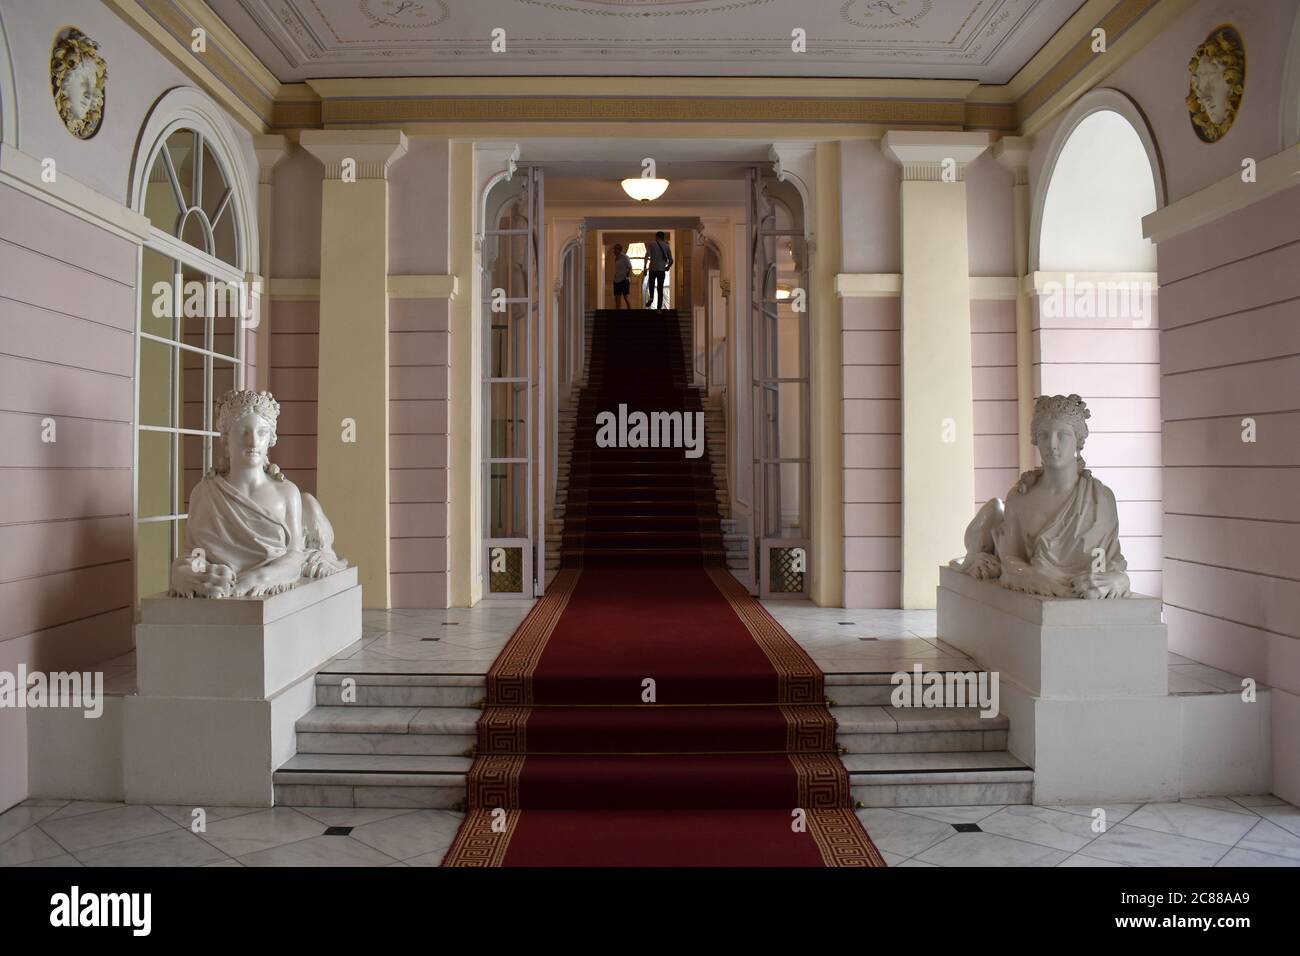 Musée Albertina. Escalier avant avec deux sphinx. Banque D'Images